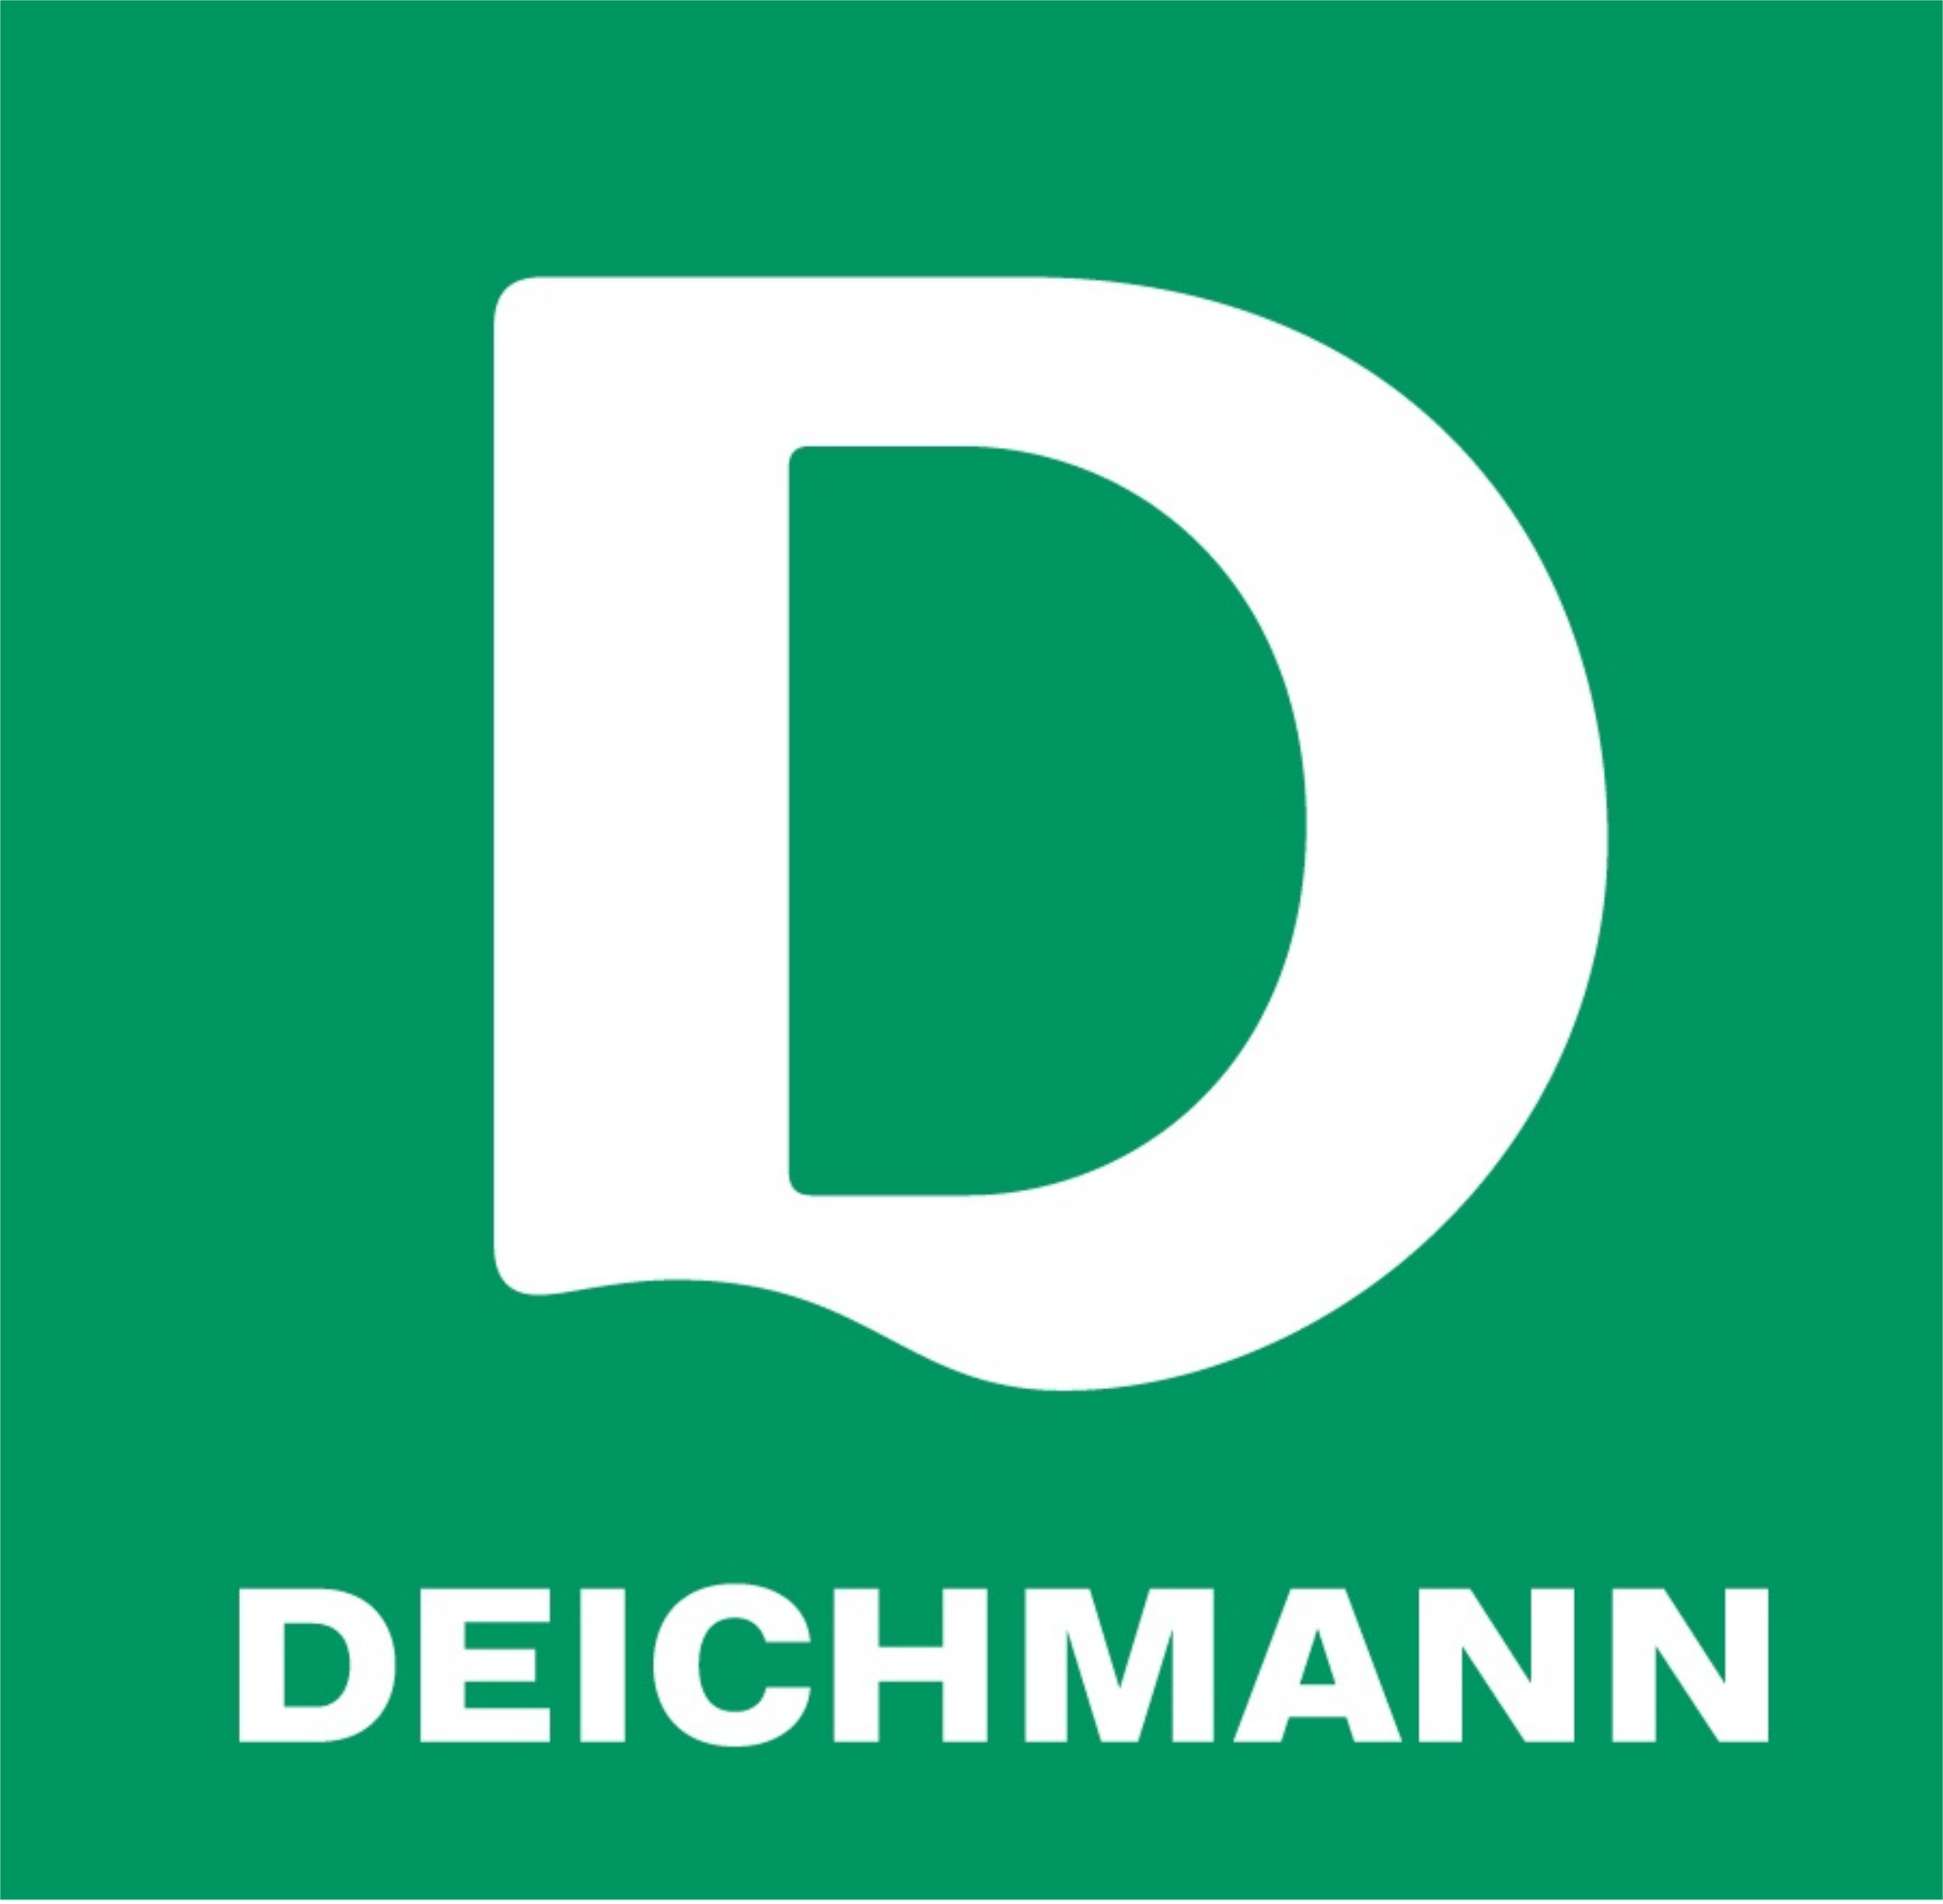 Deichmann - покупка товаров в интернет-магазине Германии и Европы